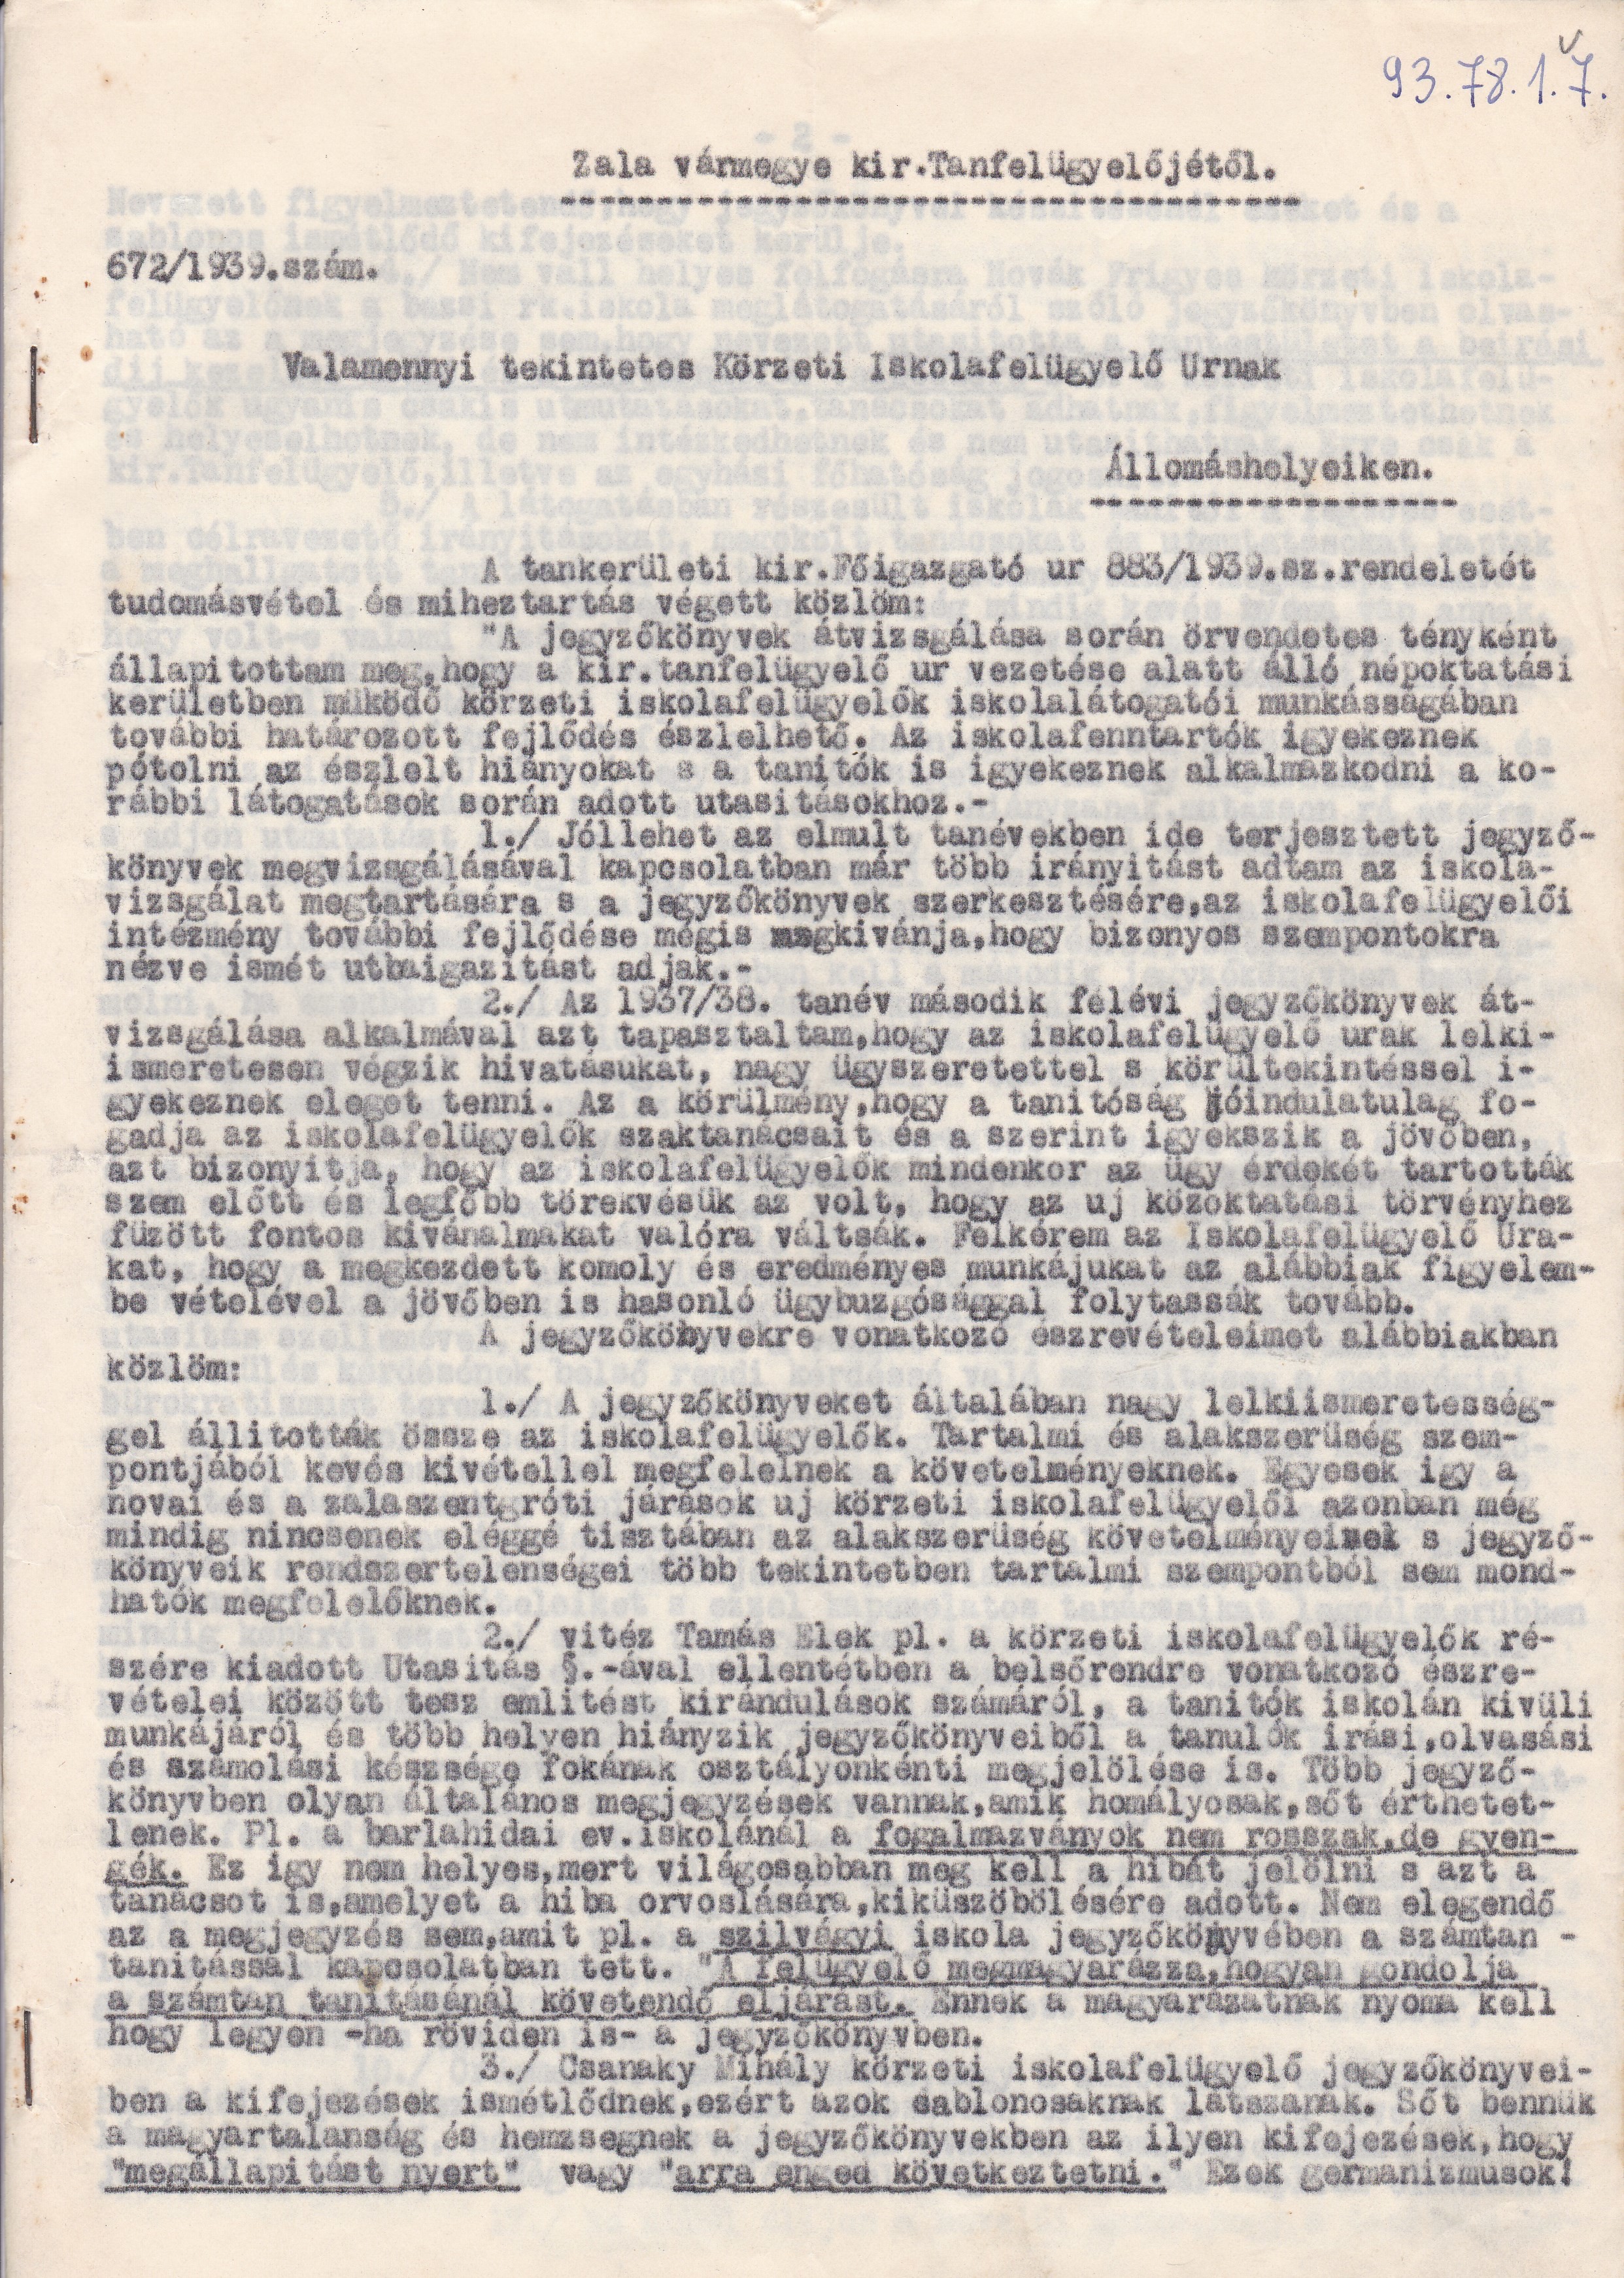 Zala vármegye kir. tanfelügyelőjének levele a körzeti iskolafelügyelőkhöz (Tapolcai Városi Múzeum CC BY-NC-SA)